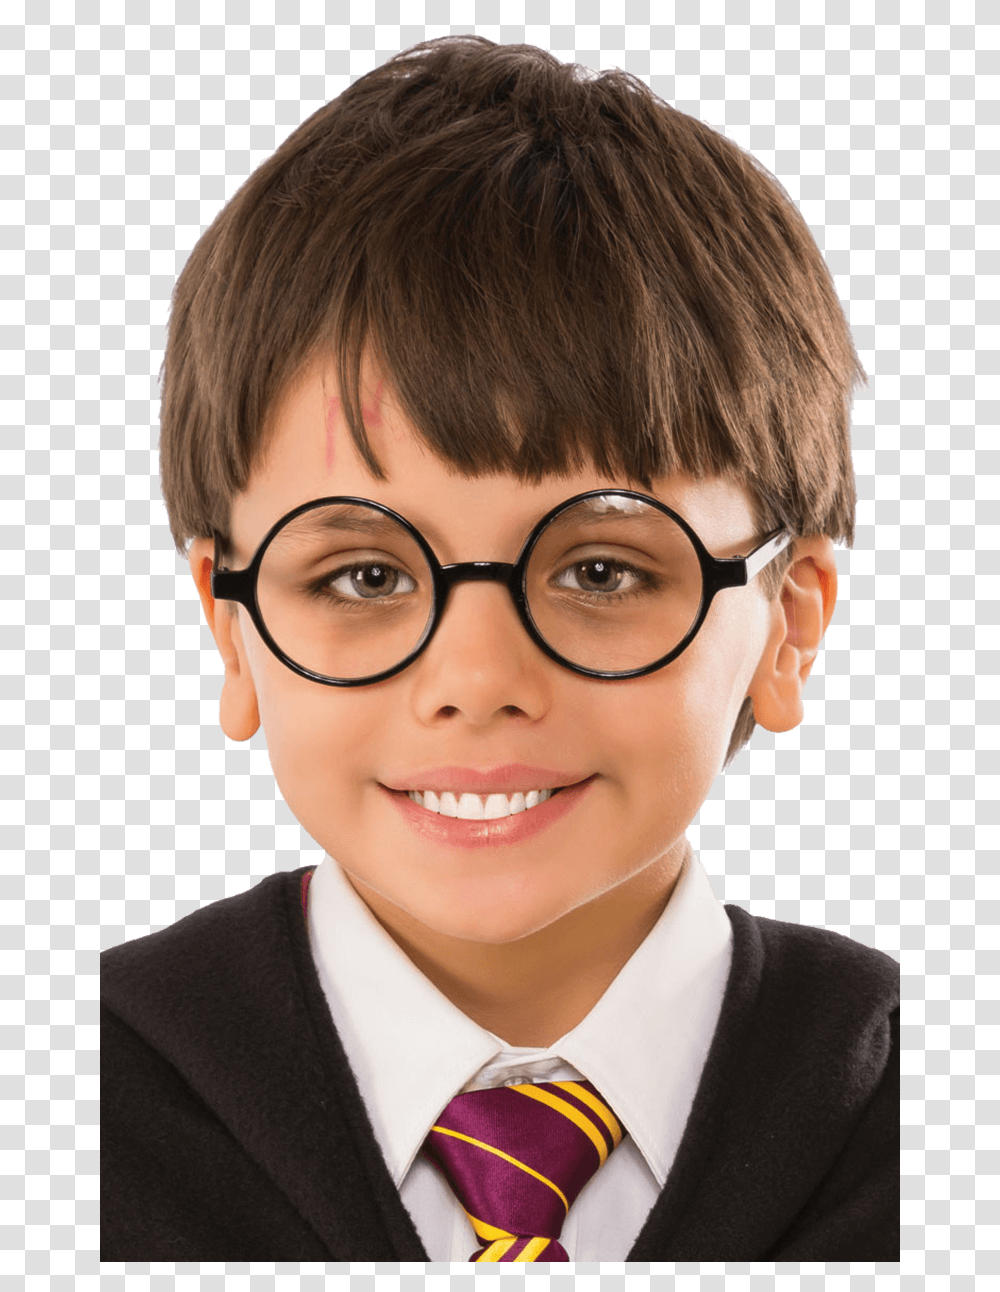 Harry Potter Glasses Harry Potter Specs, Tie, Accessories, Person, Boy Transparent Png